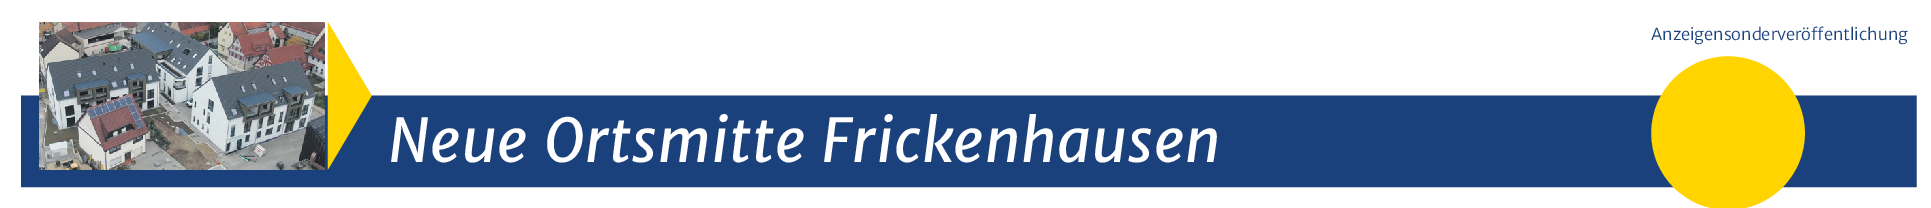 Frickenhausen: Vollendung eines "Jahrhundertprojekts"